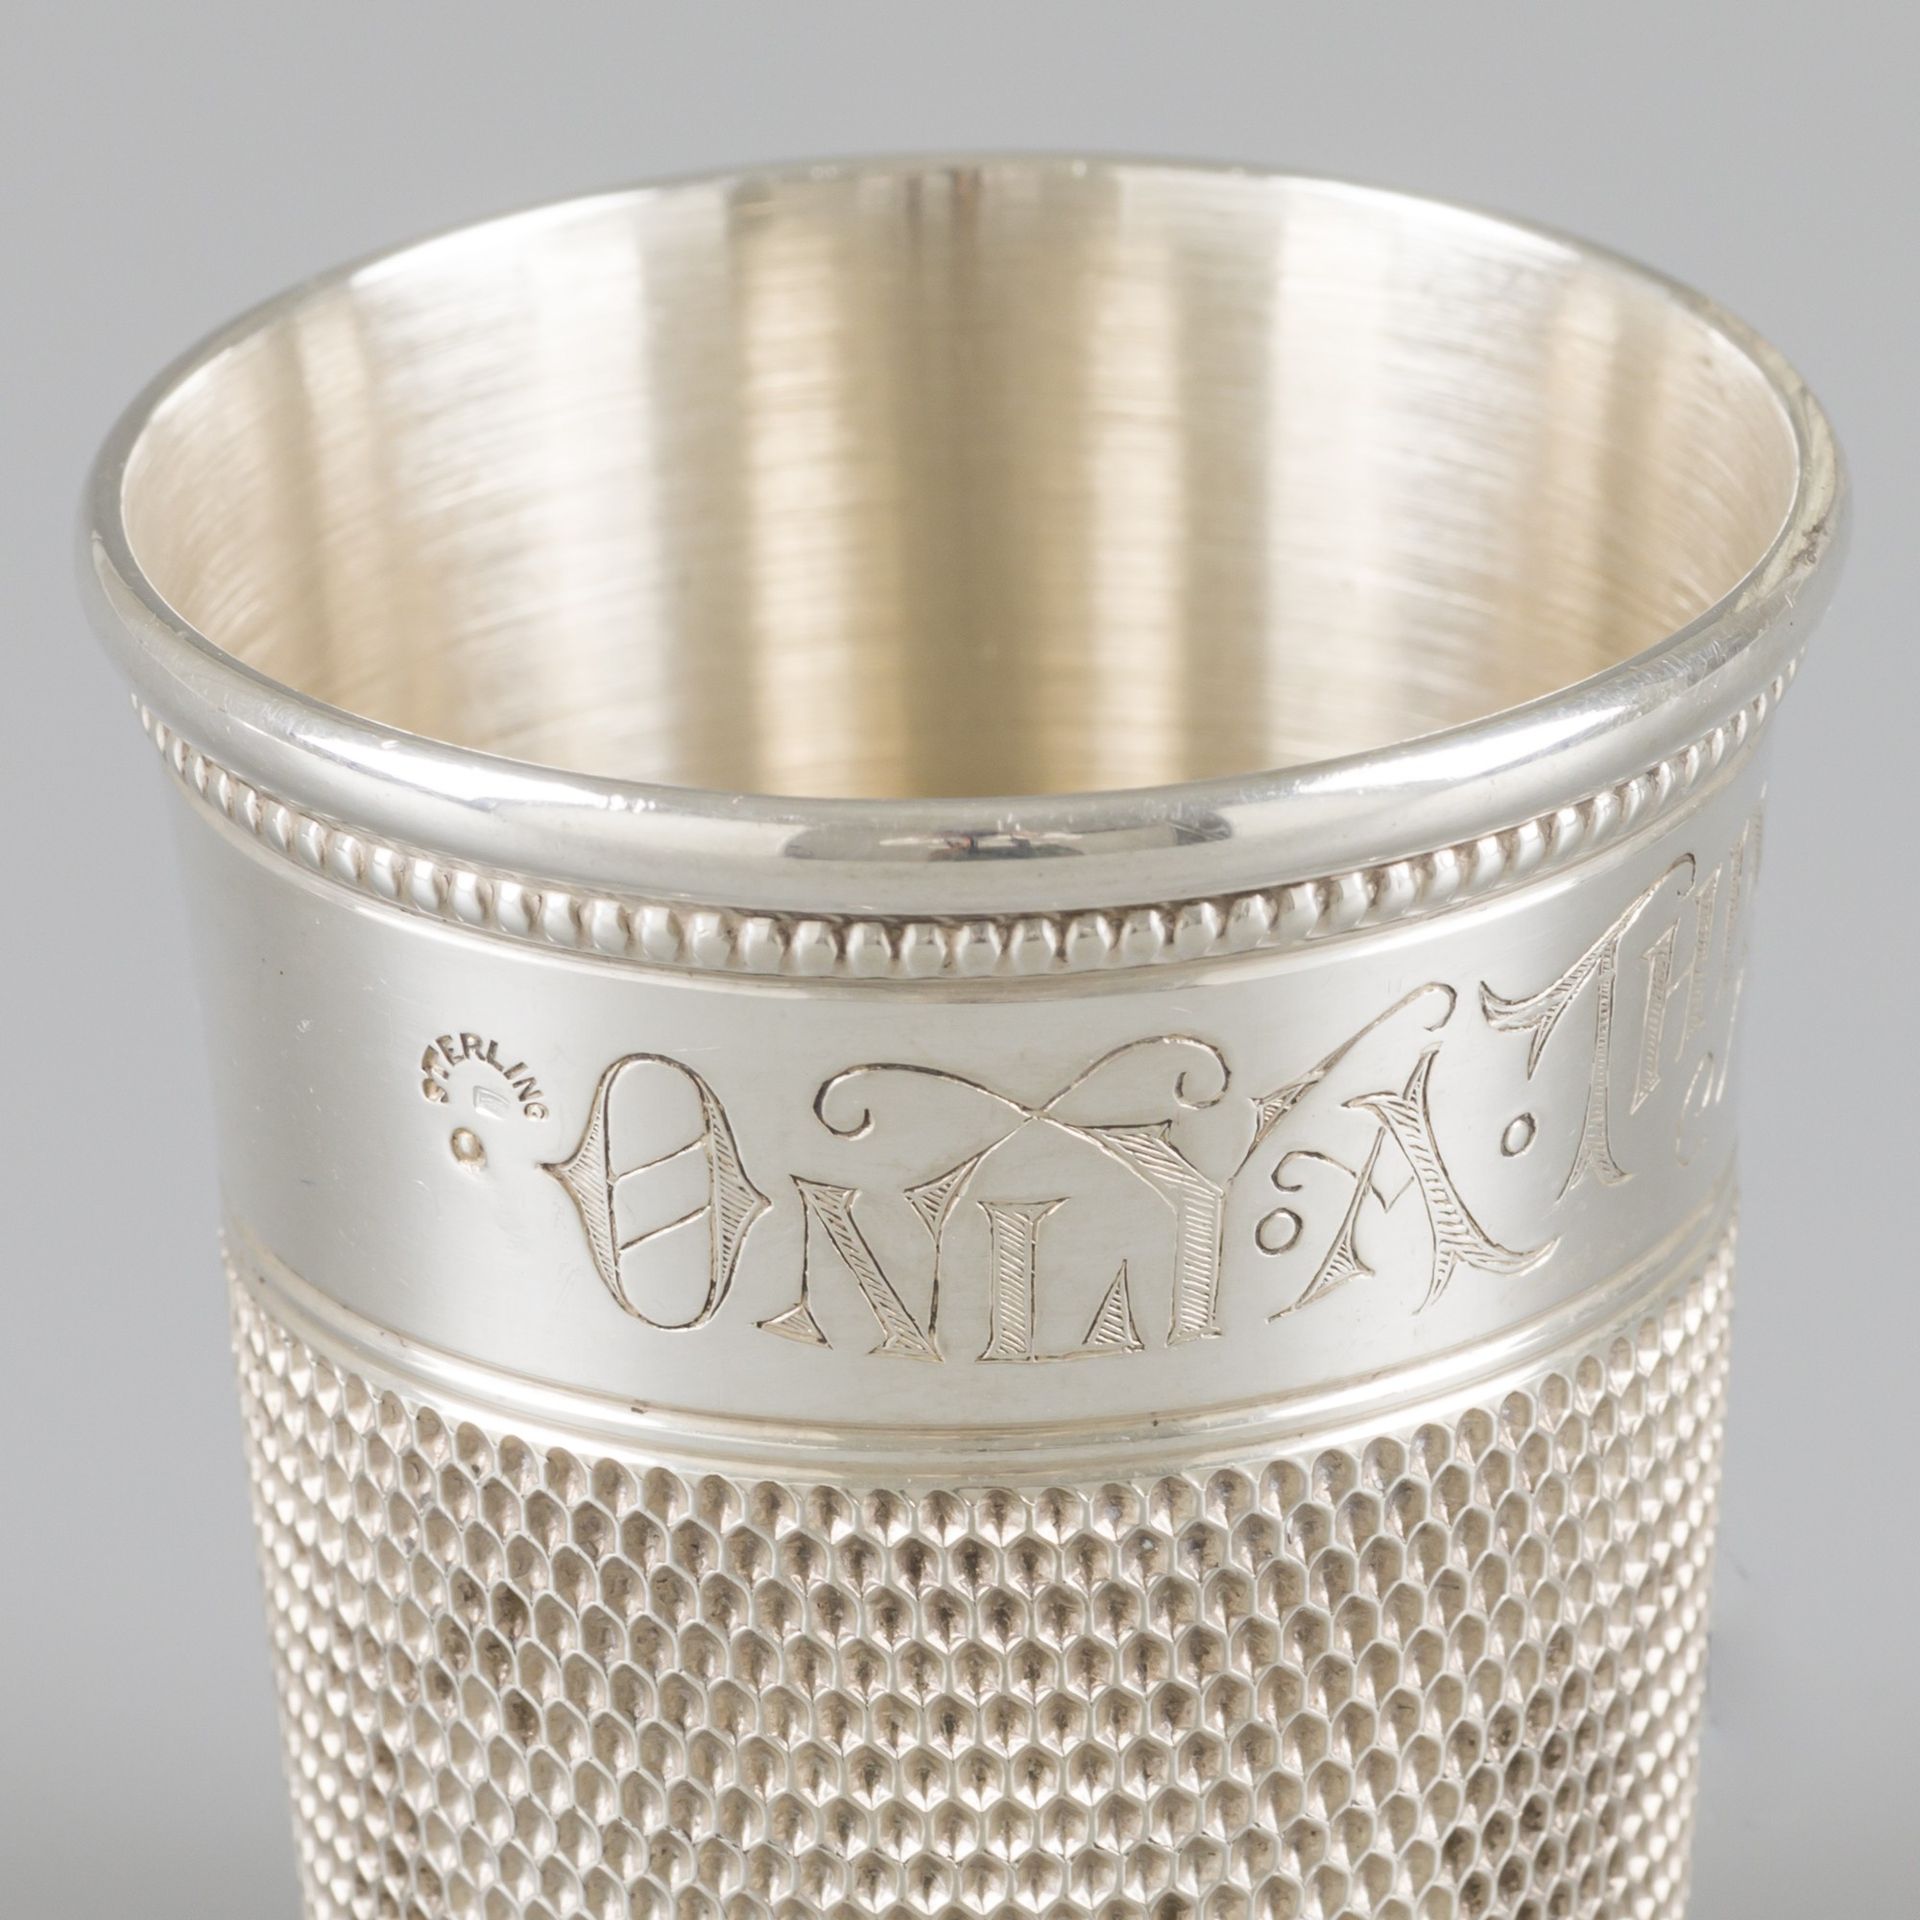 Drink / measuring cup thimble silver. Entworfen als Fingerhut, mit eingraviertem&hellip;